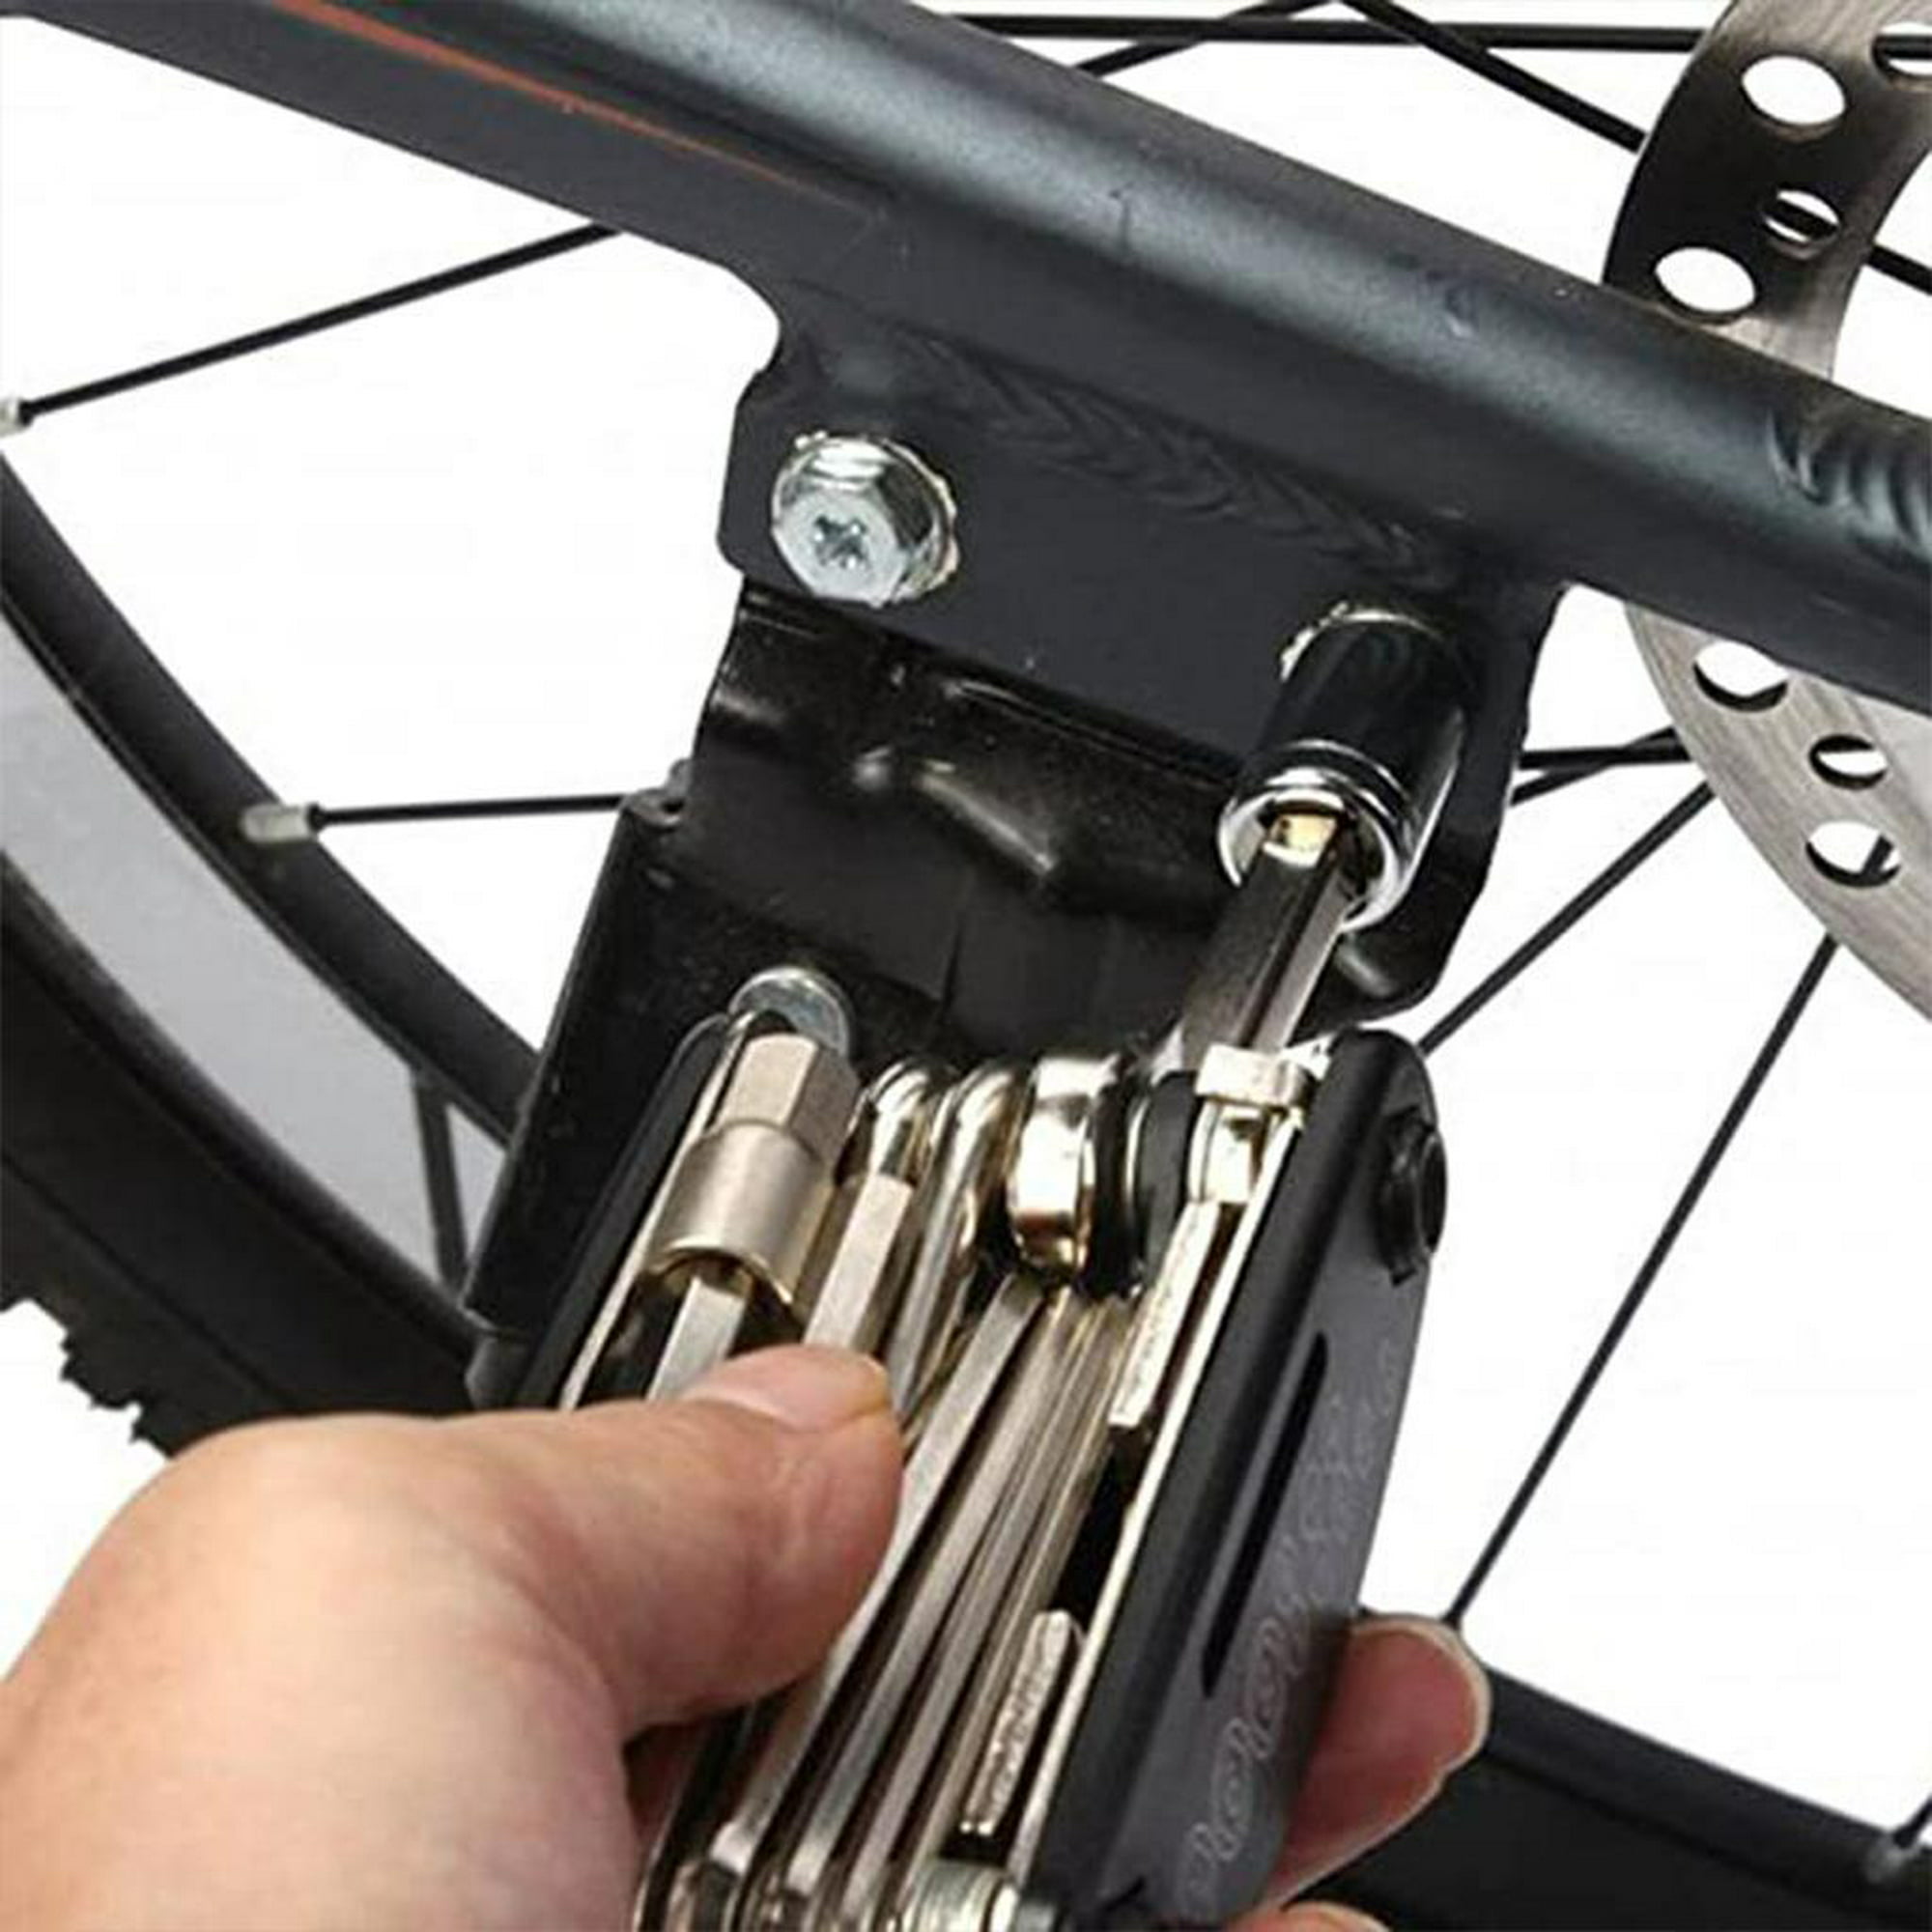 Kit de Herramientas Profesional para Bicicletas, 44 Piezas Acero